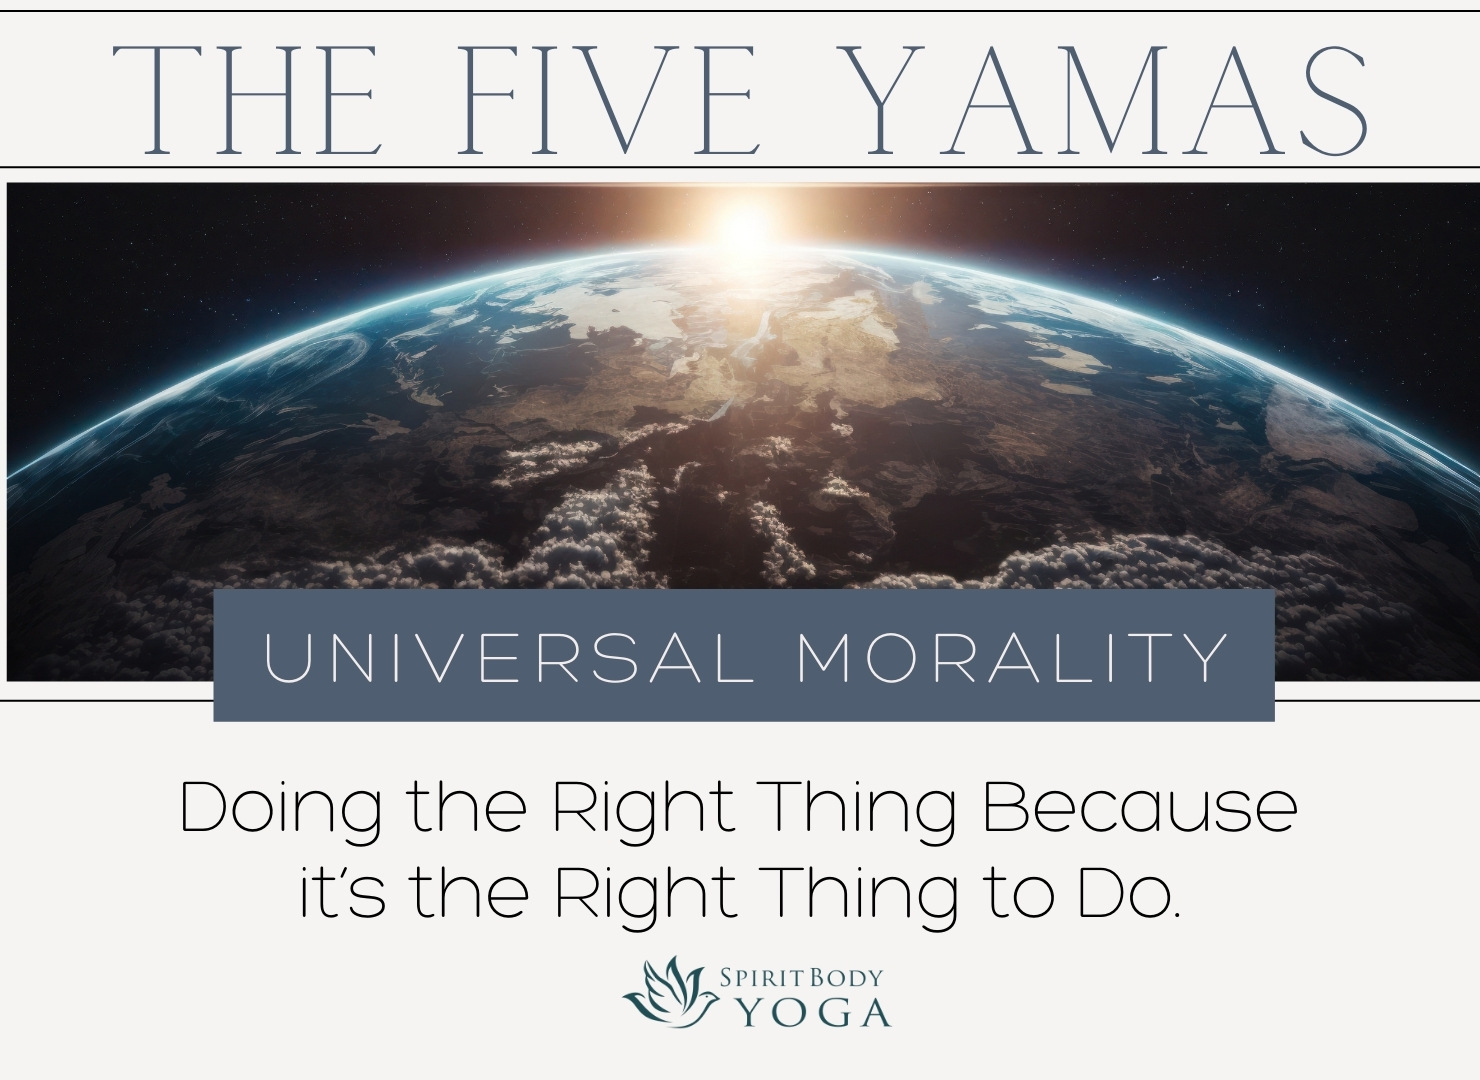 YAMAS – Universal Morality